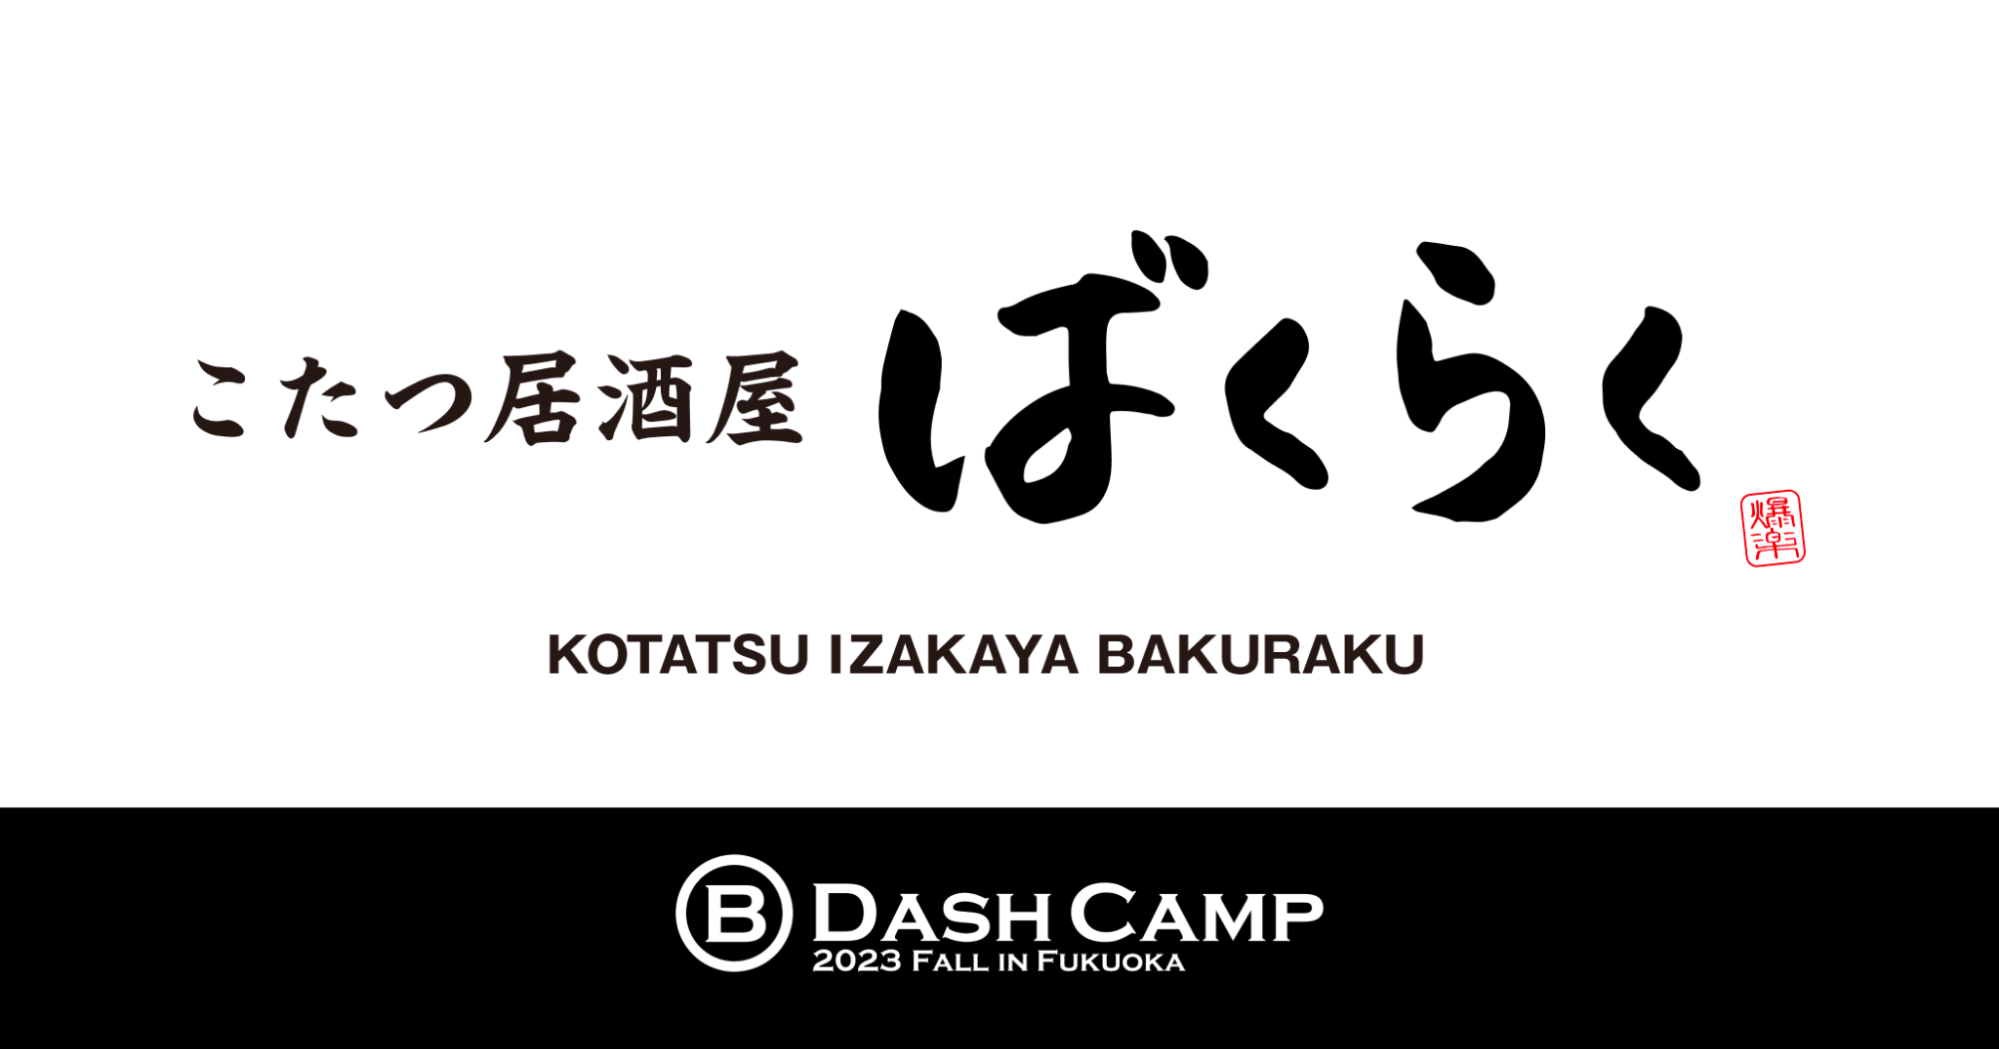 バクラク、B Dash Camp 2023 Fall in Fukuokaに登壇および出展。「こたつ居酒屋ばくらく」もオープン